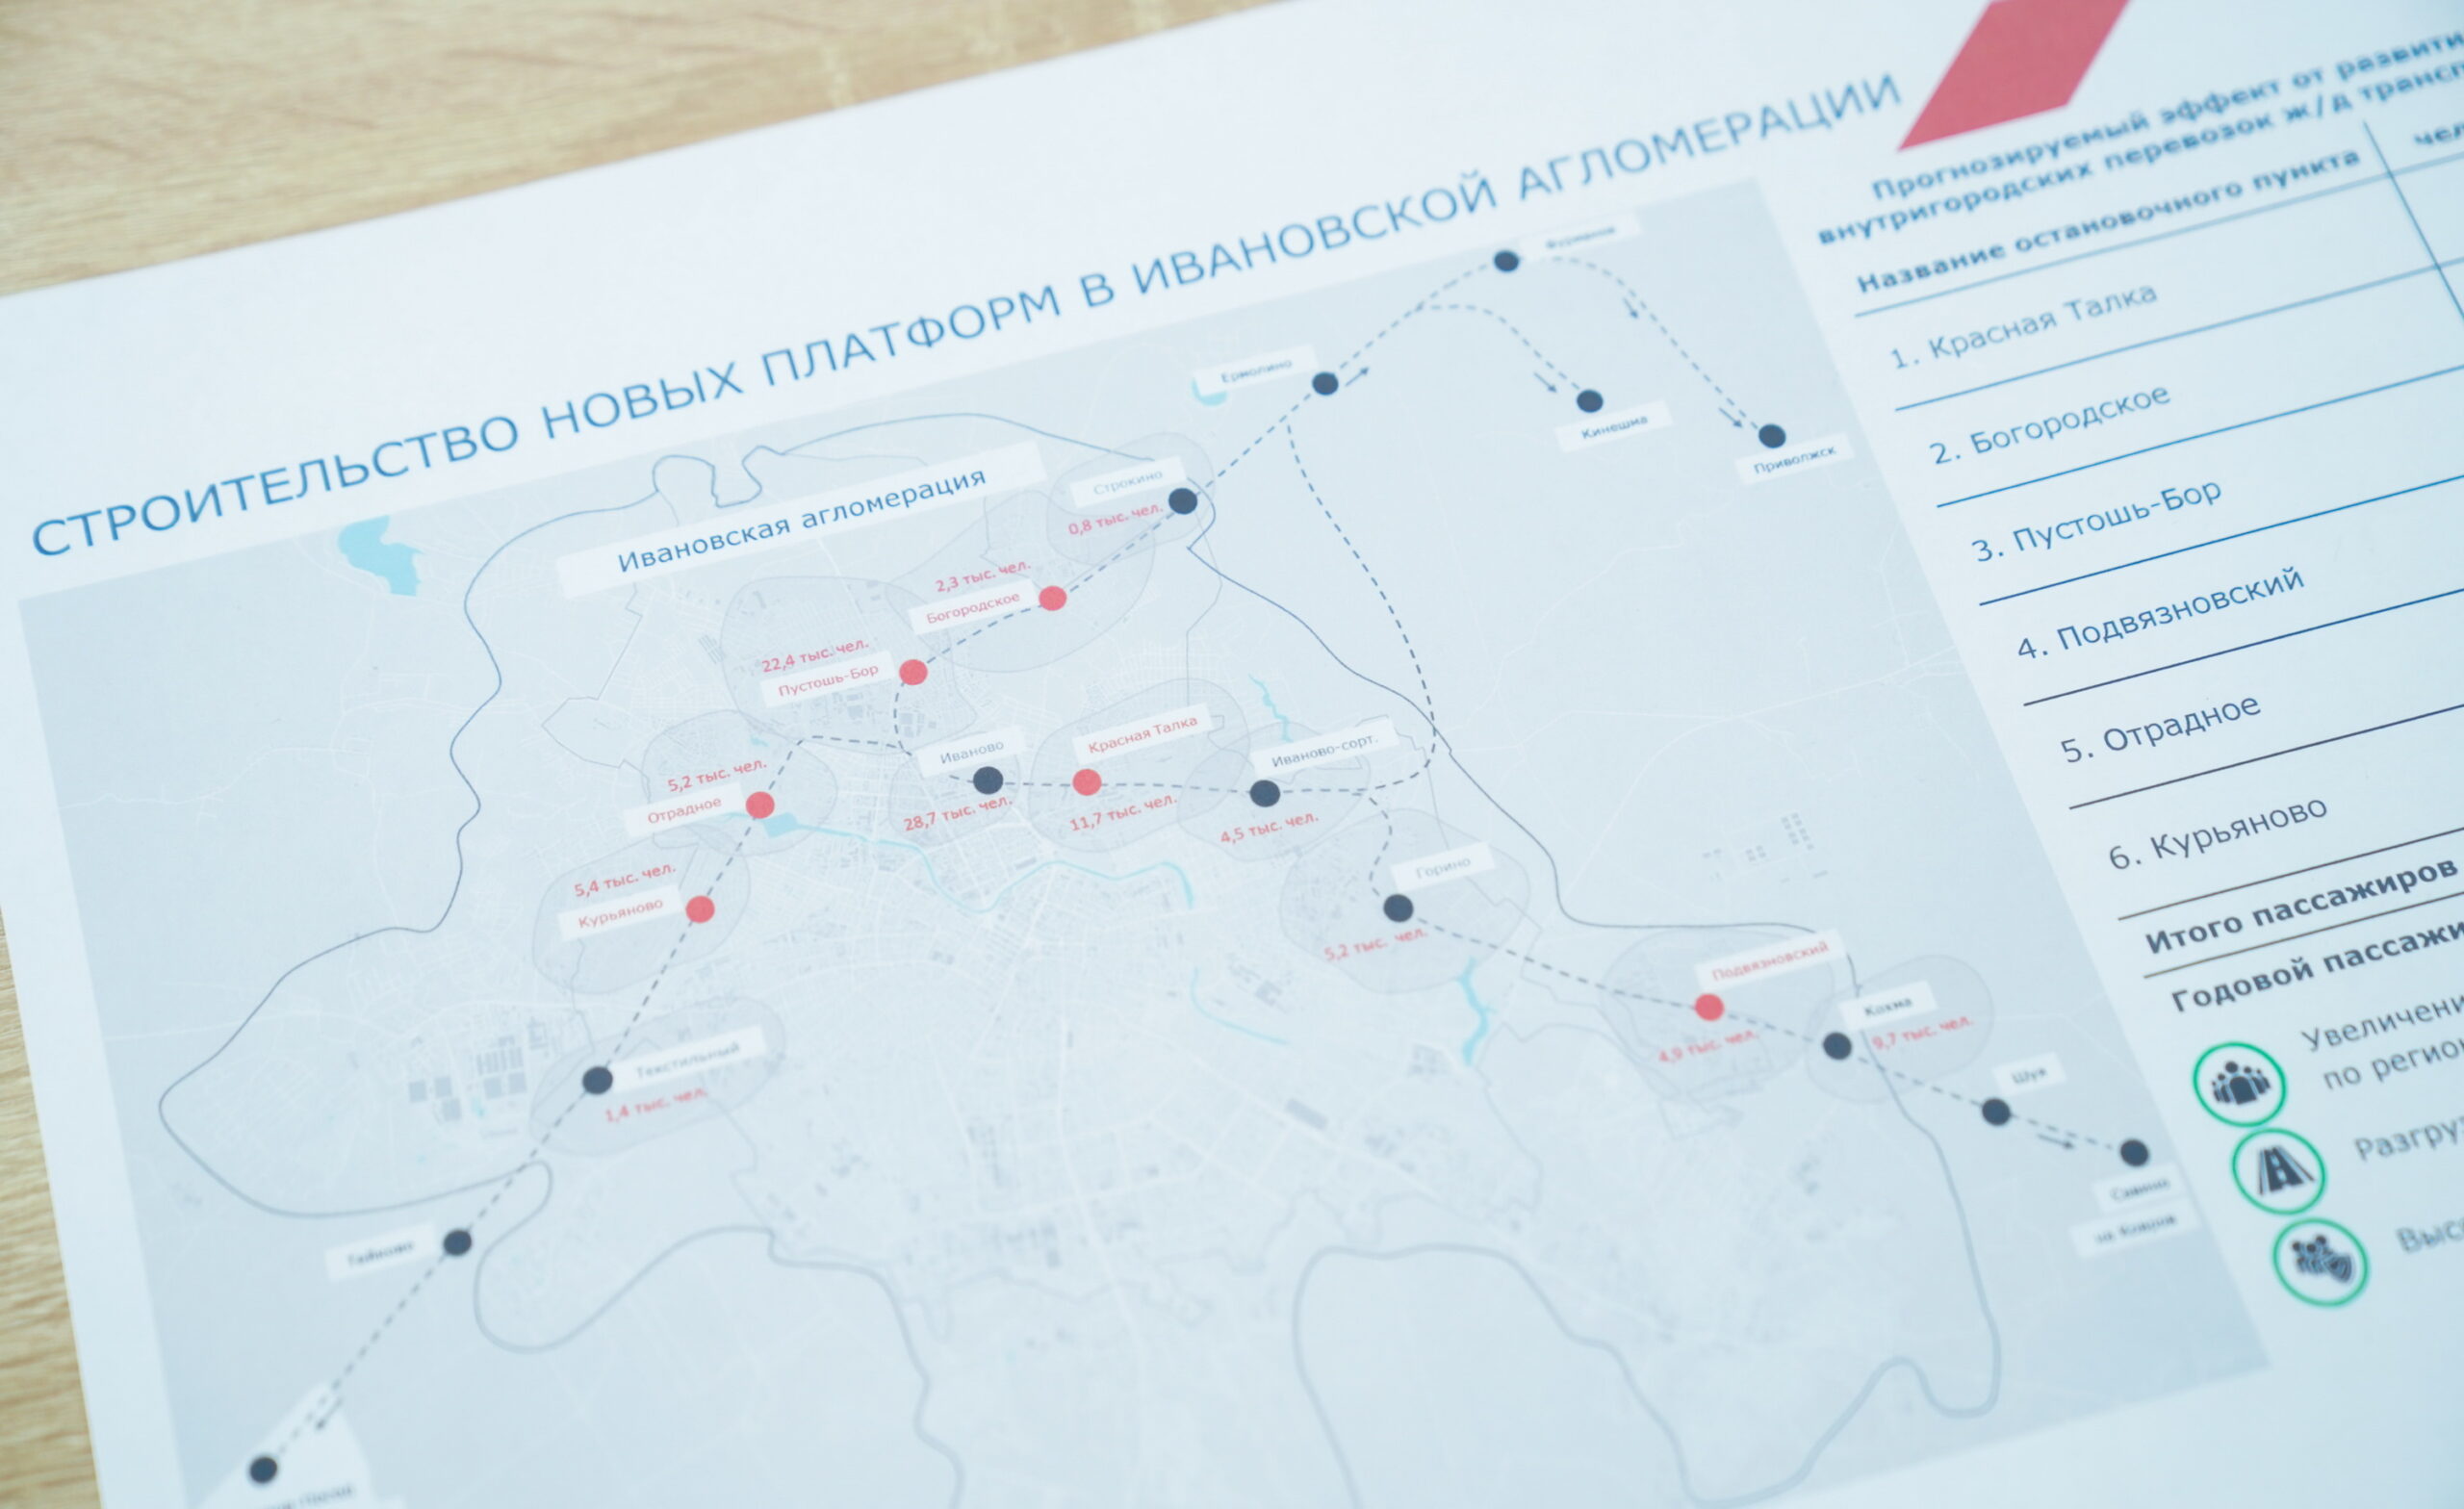 В Иванове создадут аналог наземного метро для повышения транспортной доступности и удобства пассажиров